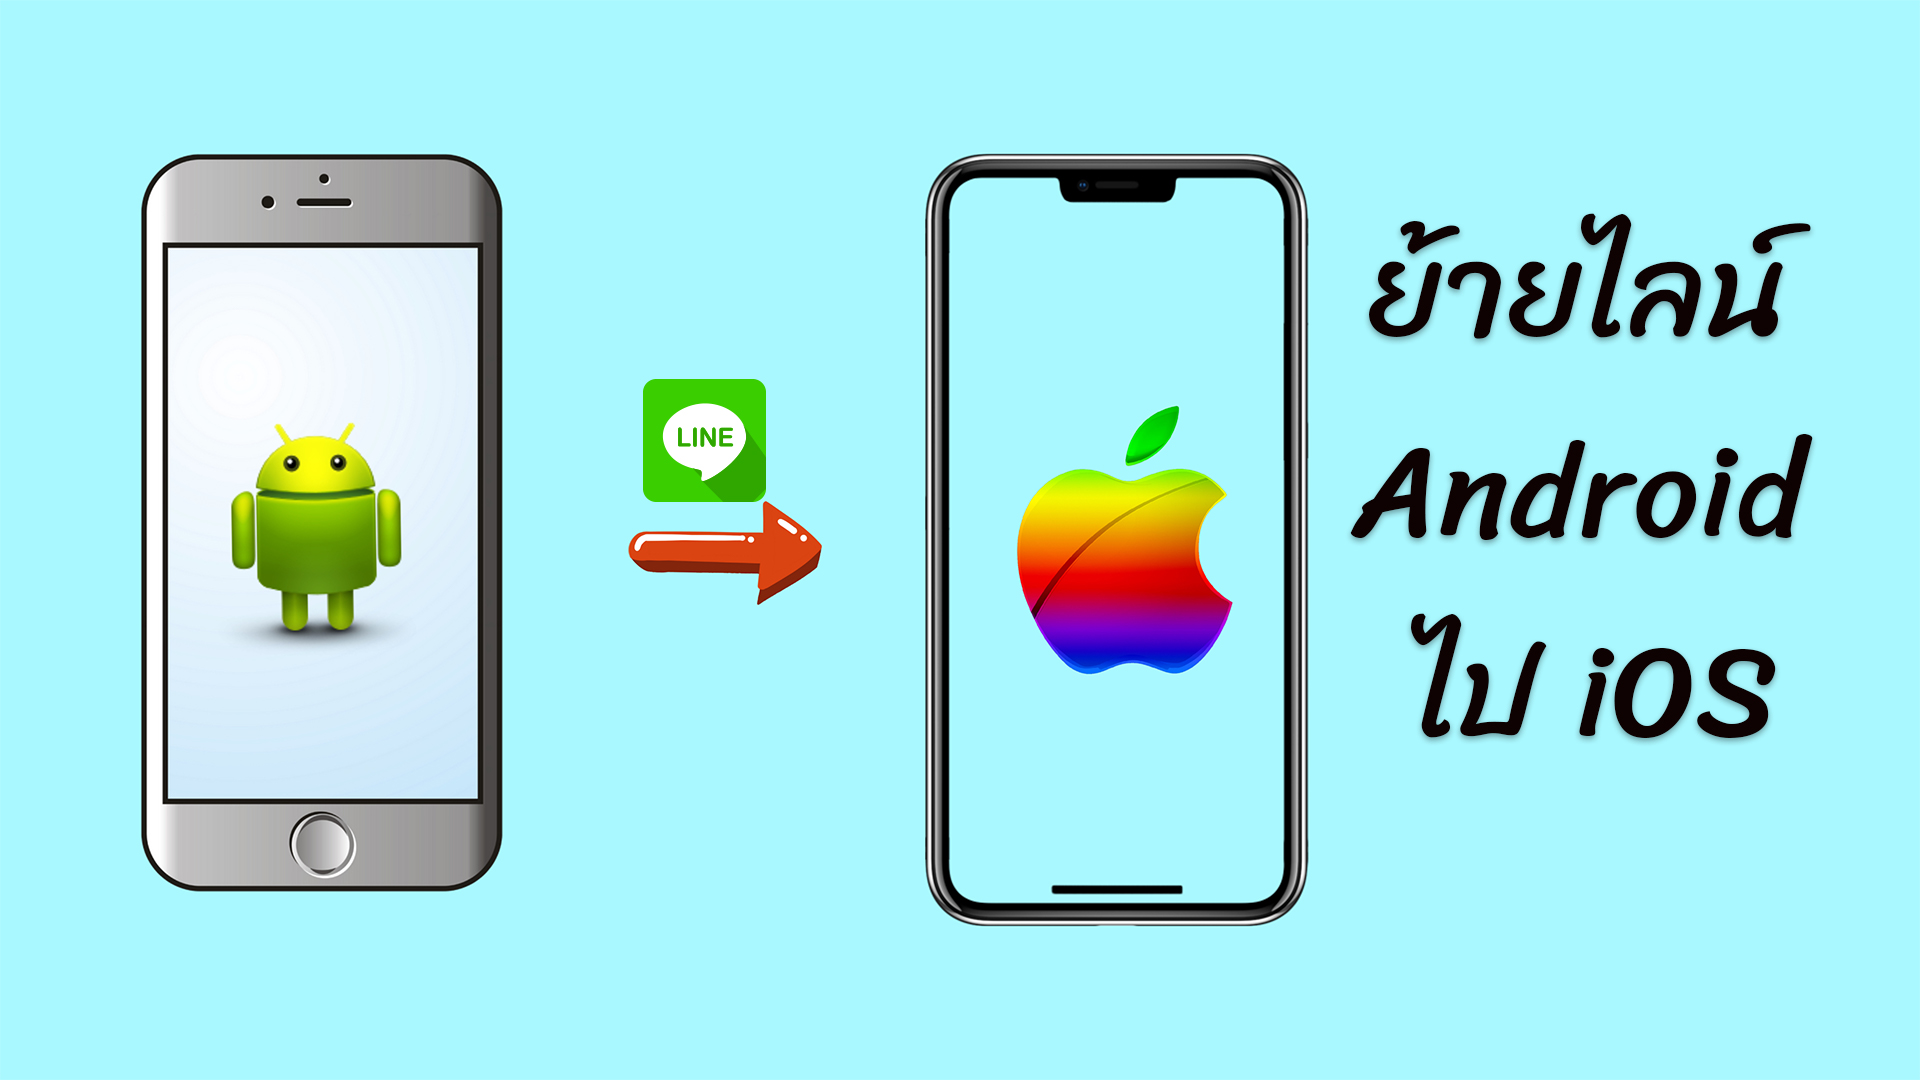 การสอนย้าย LINE ข้ามระบบ Android ไป iOS ในบทความเดียว!